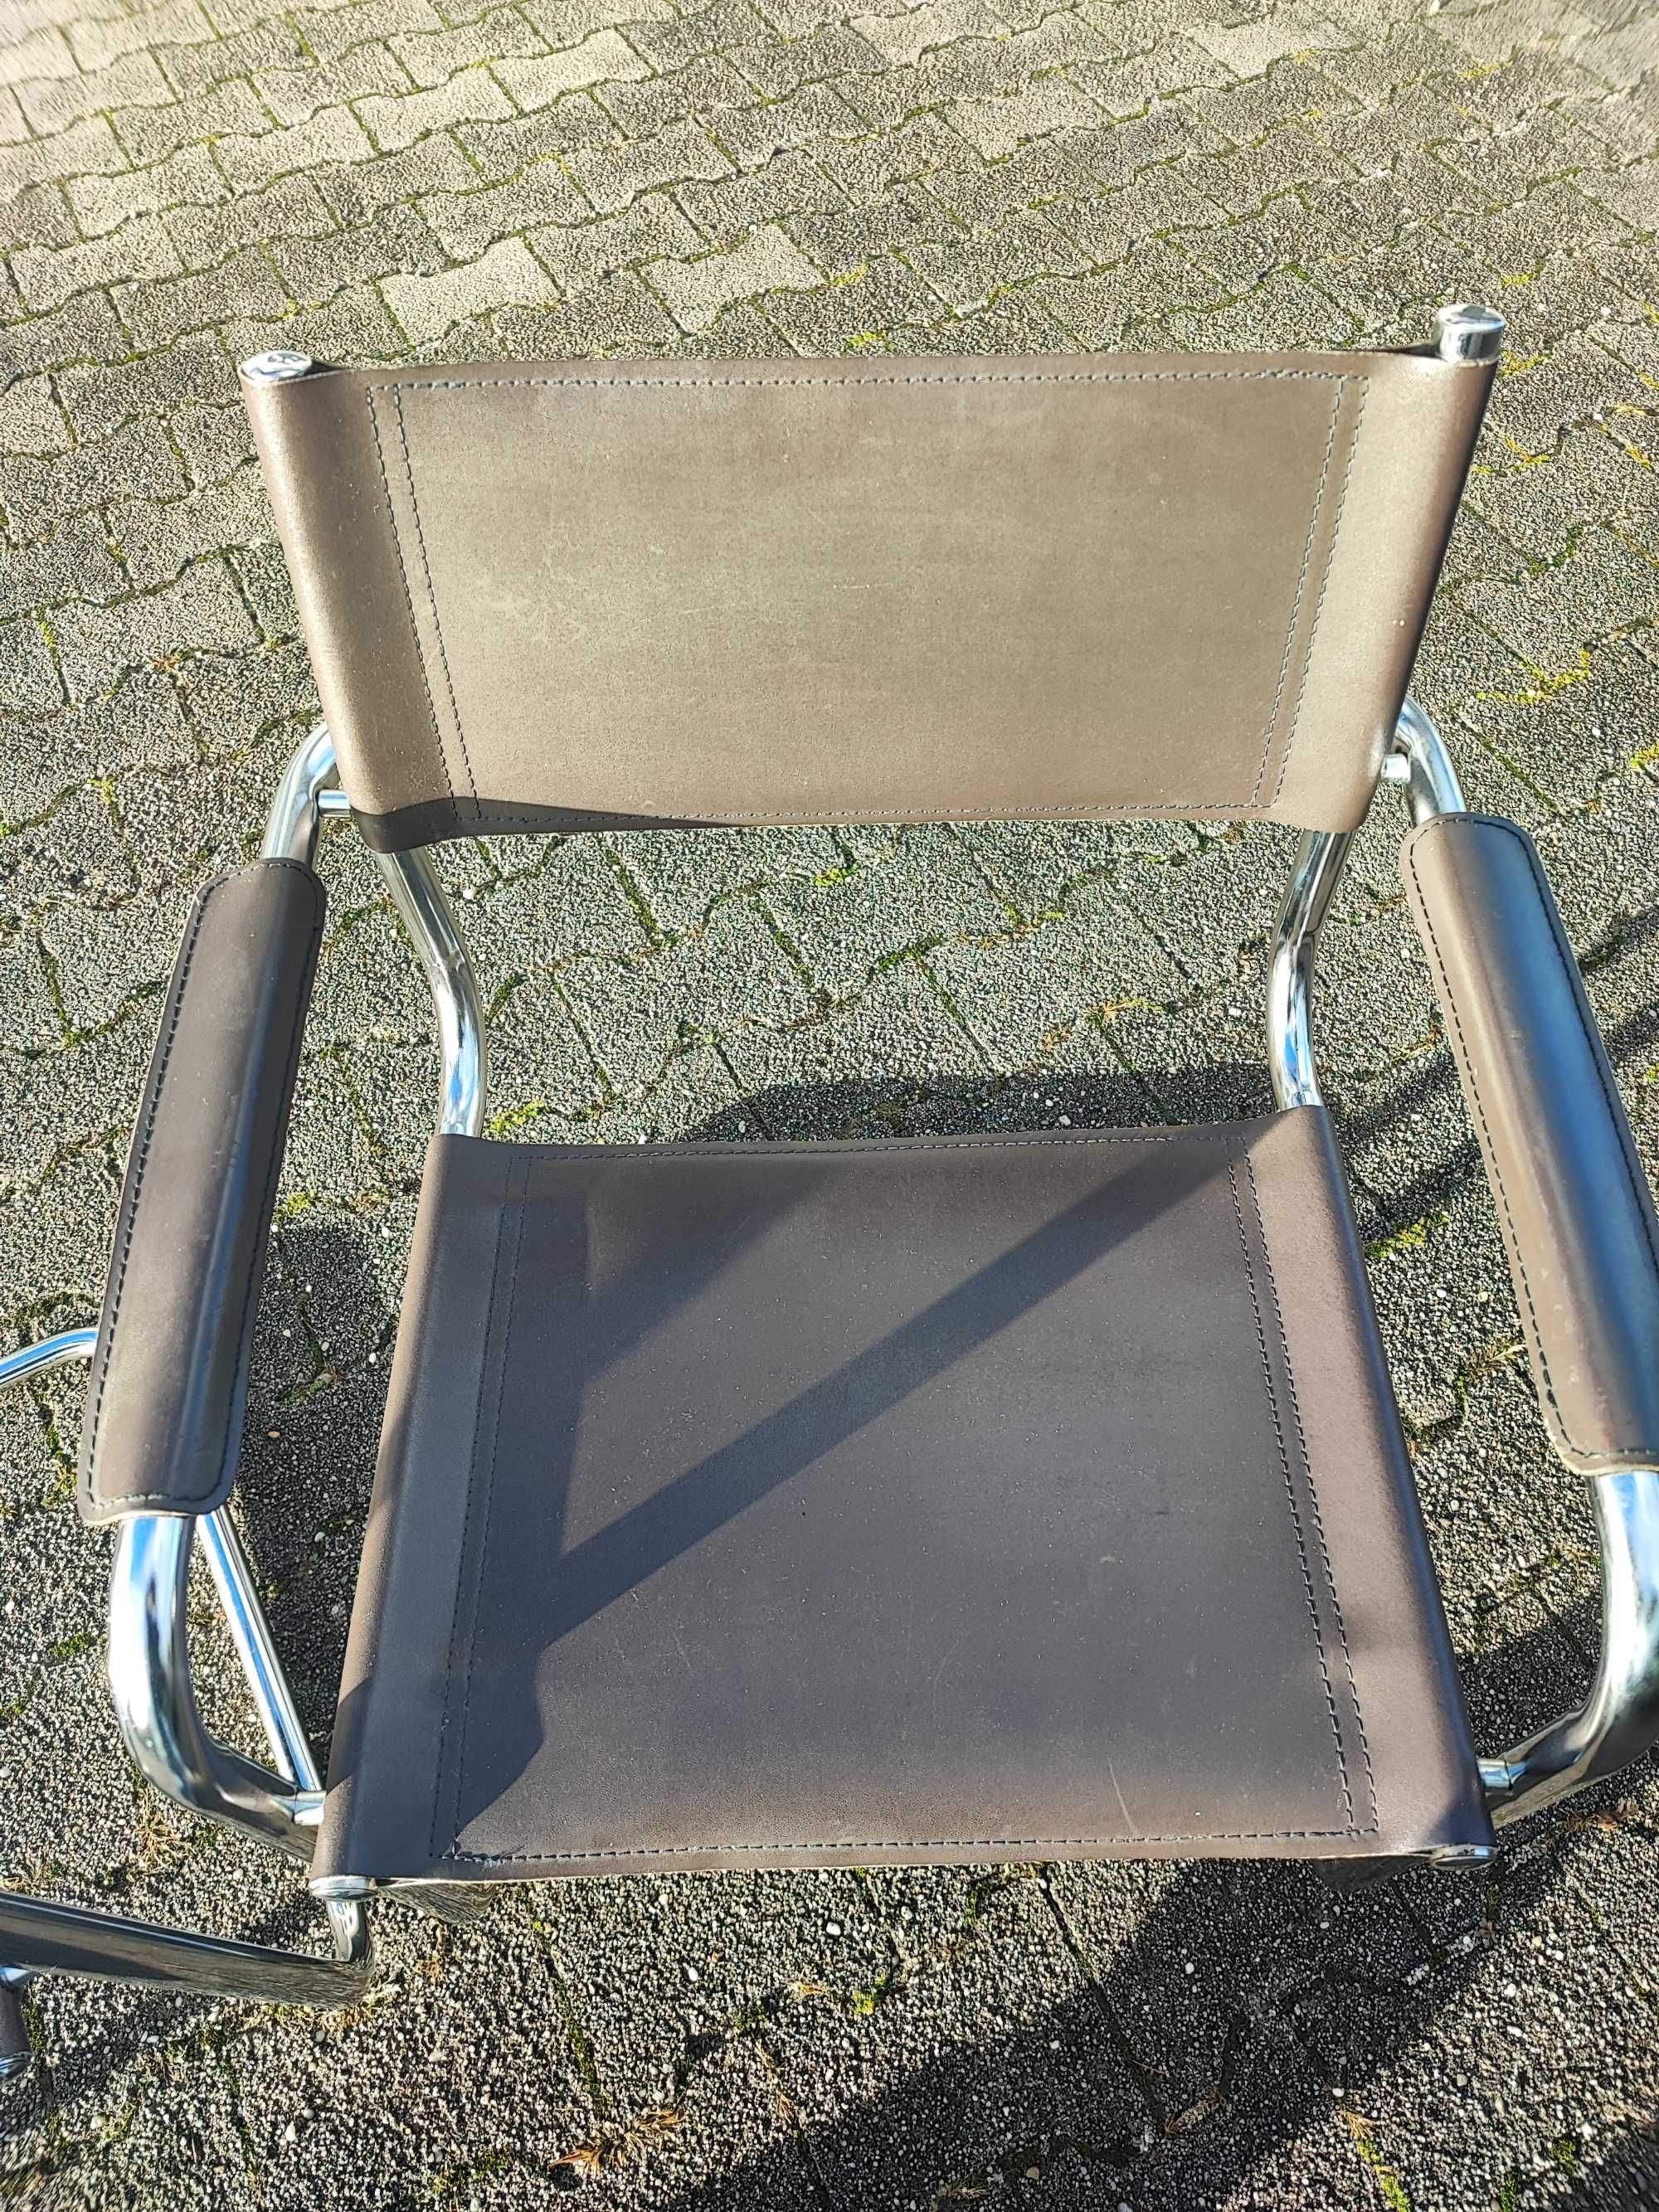 Krzesła w stylu Bauhaus.